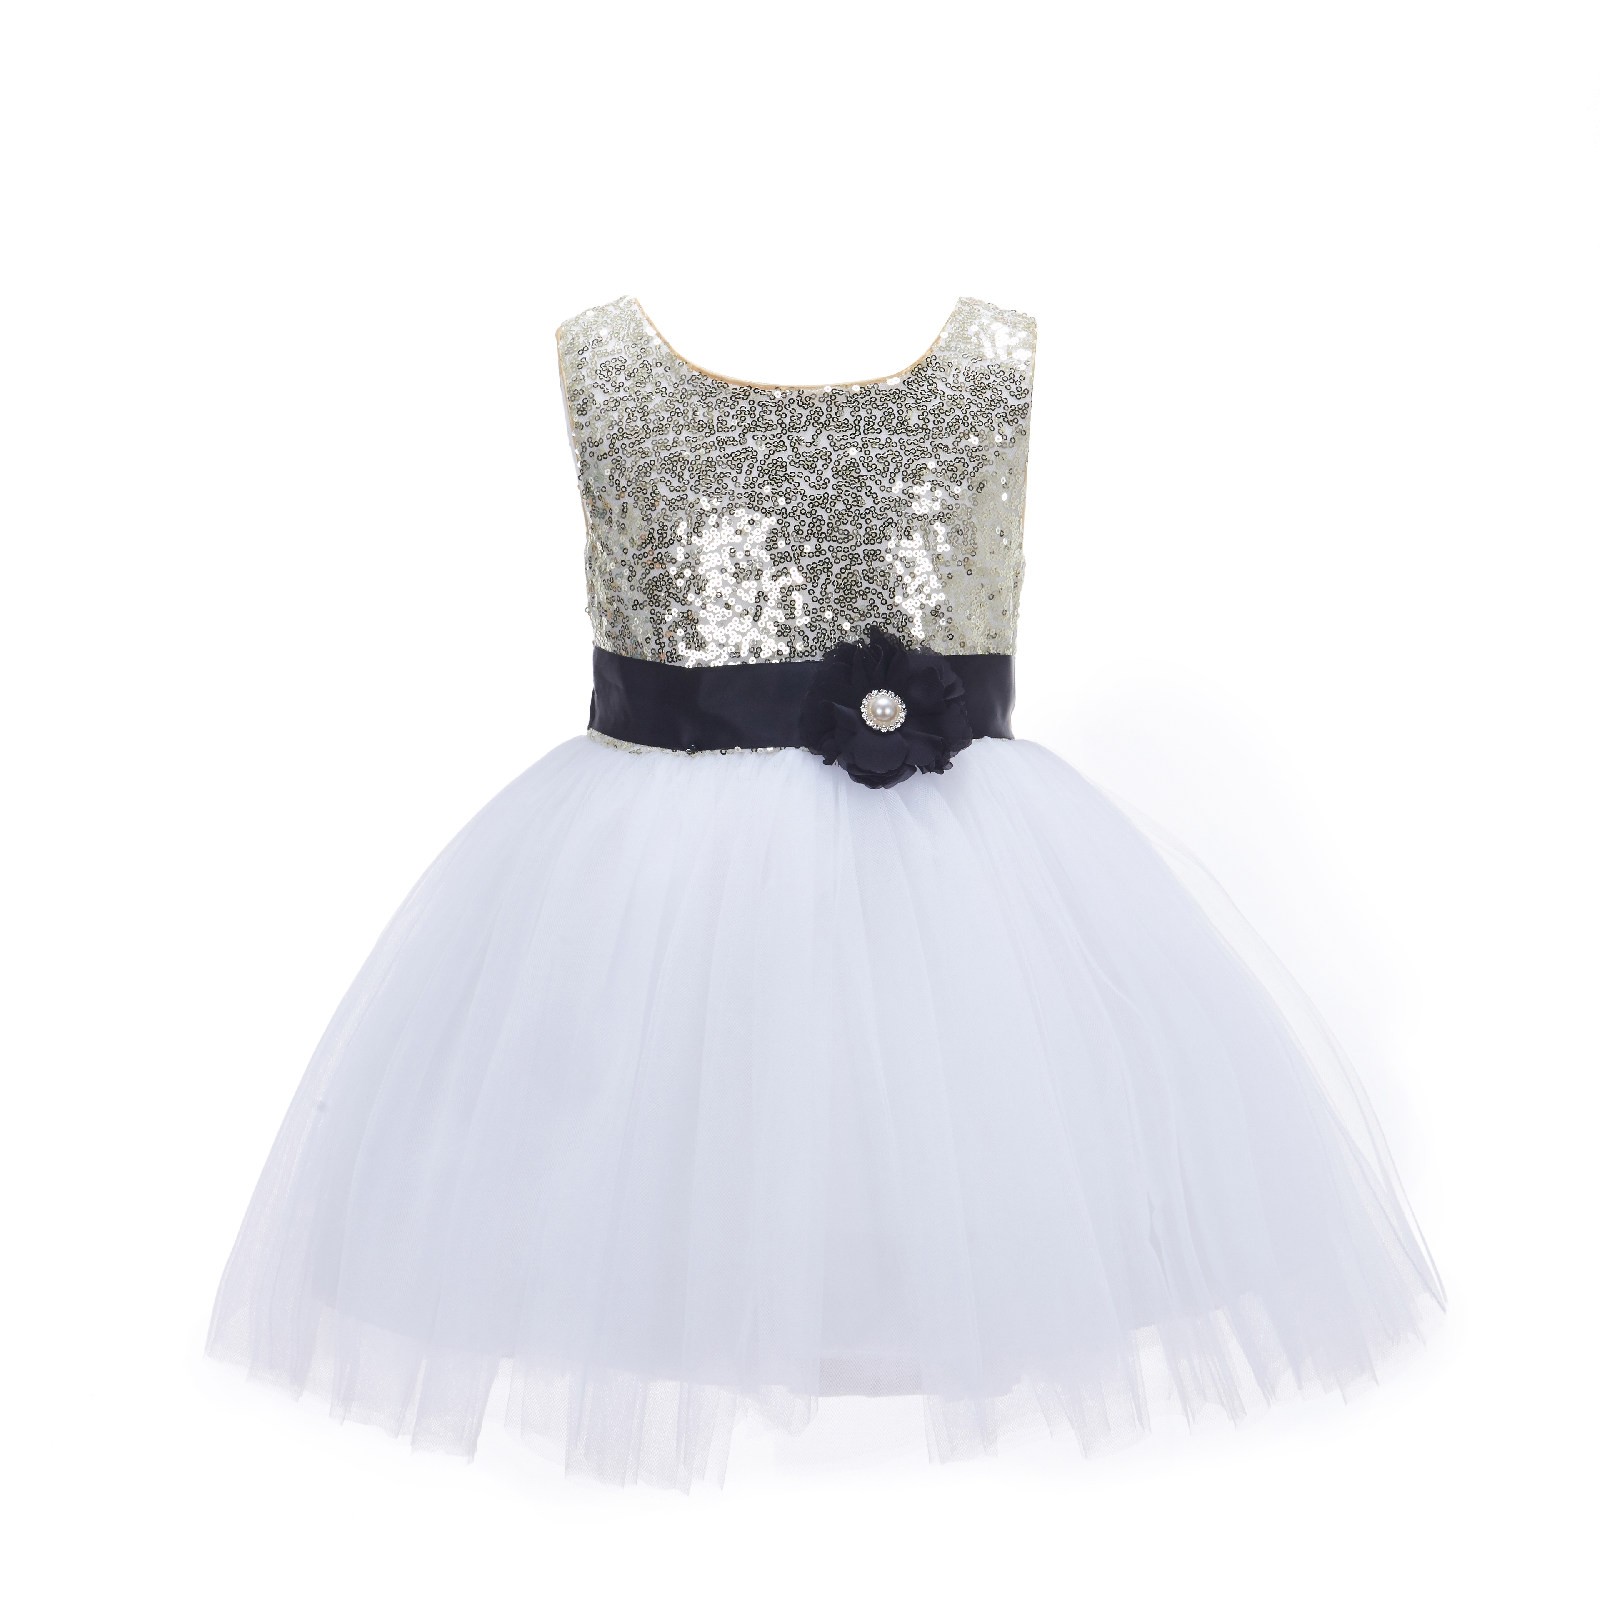 Gold/White/Black Glitter Sequin Tulle Flower Girl Dress Party Ball Gown 123RF